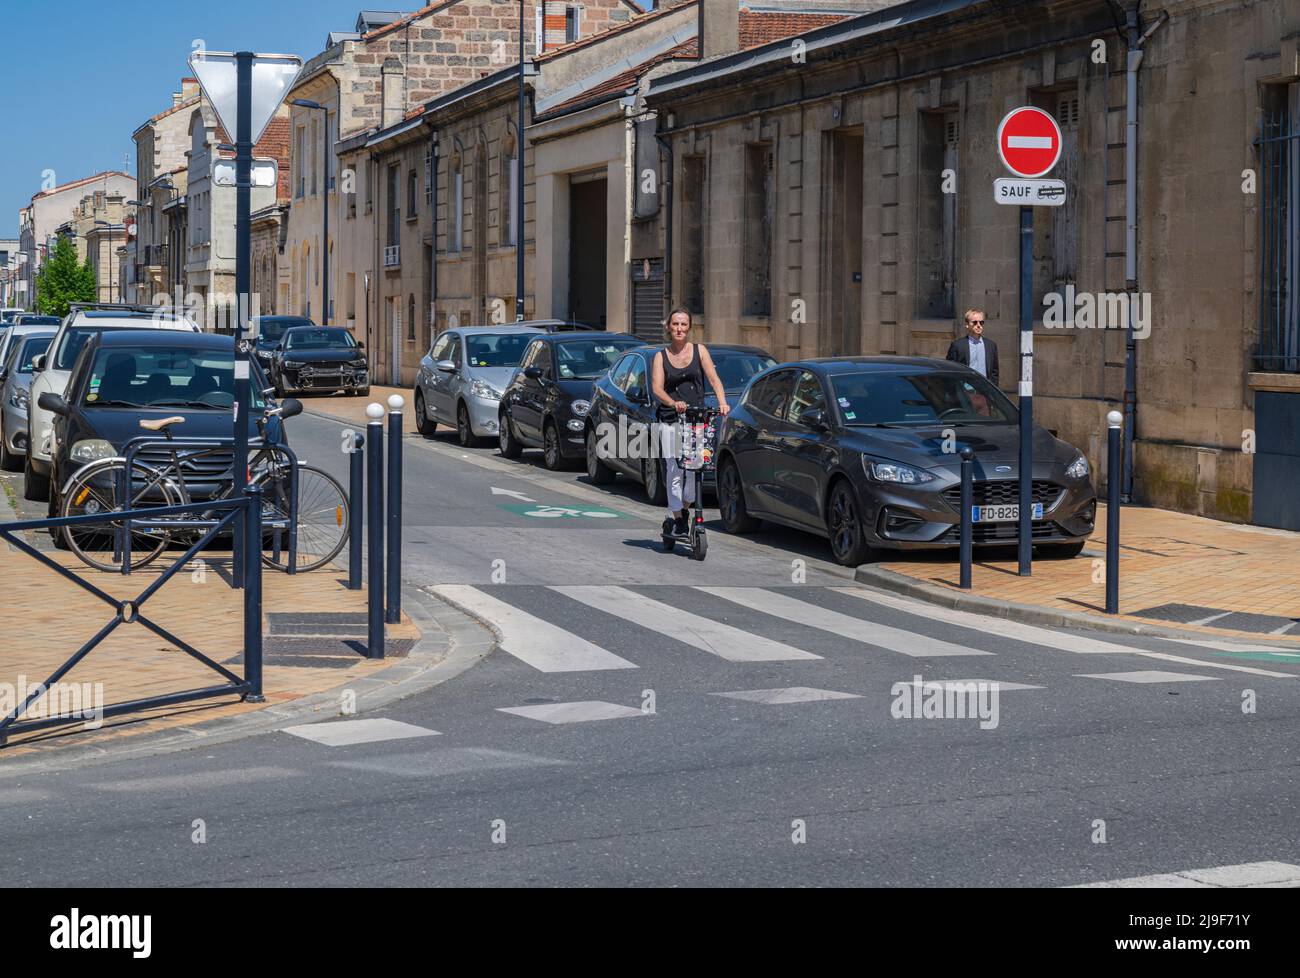 Avenue Journu Auber, Chartrons, Bordeaux, France - Car Parking Problems Stock Photo